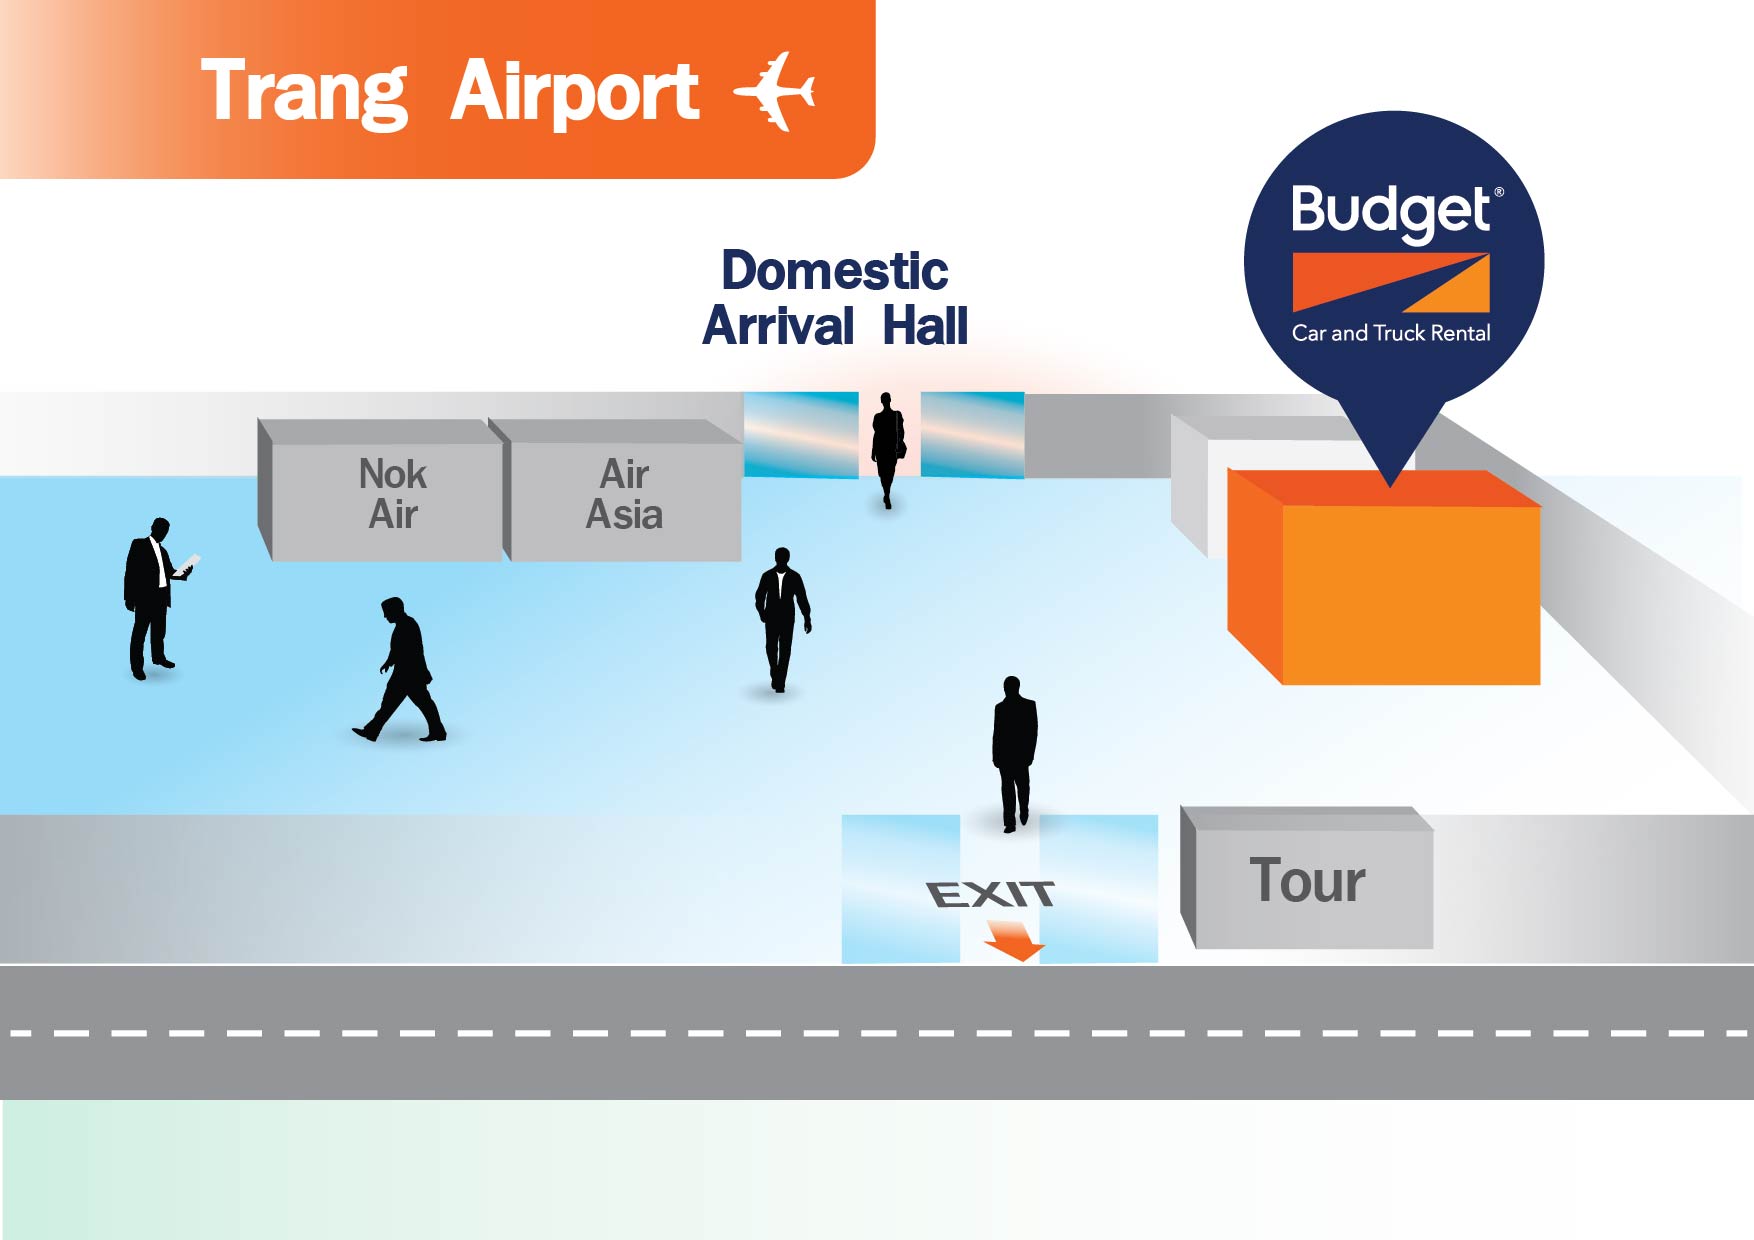 budget/budget-trang-airport-TST.jpg